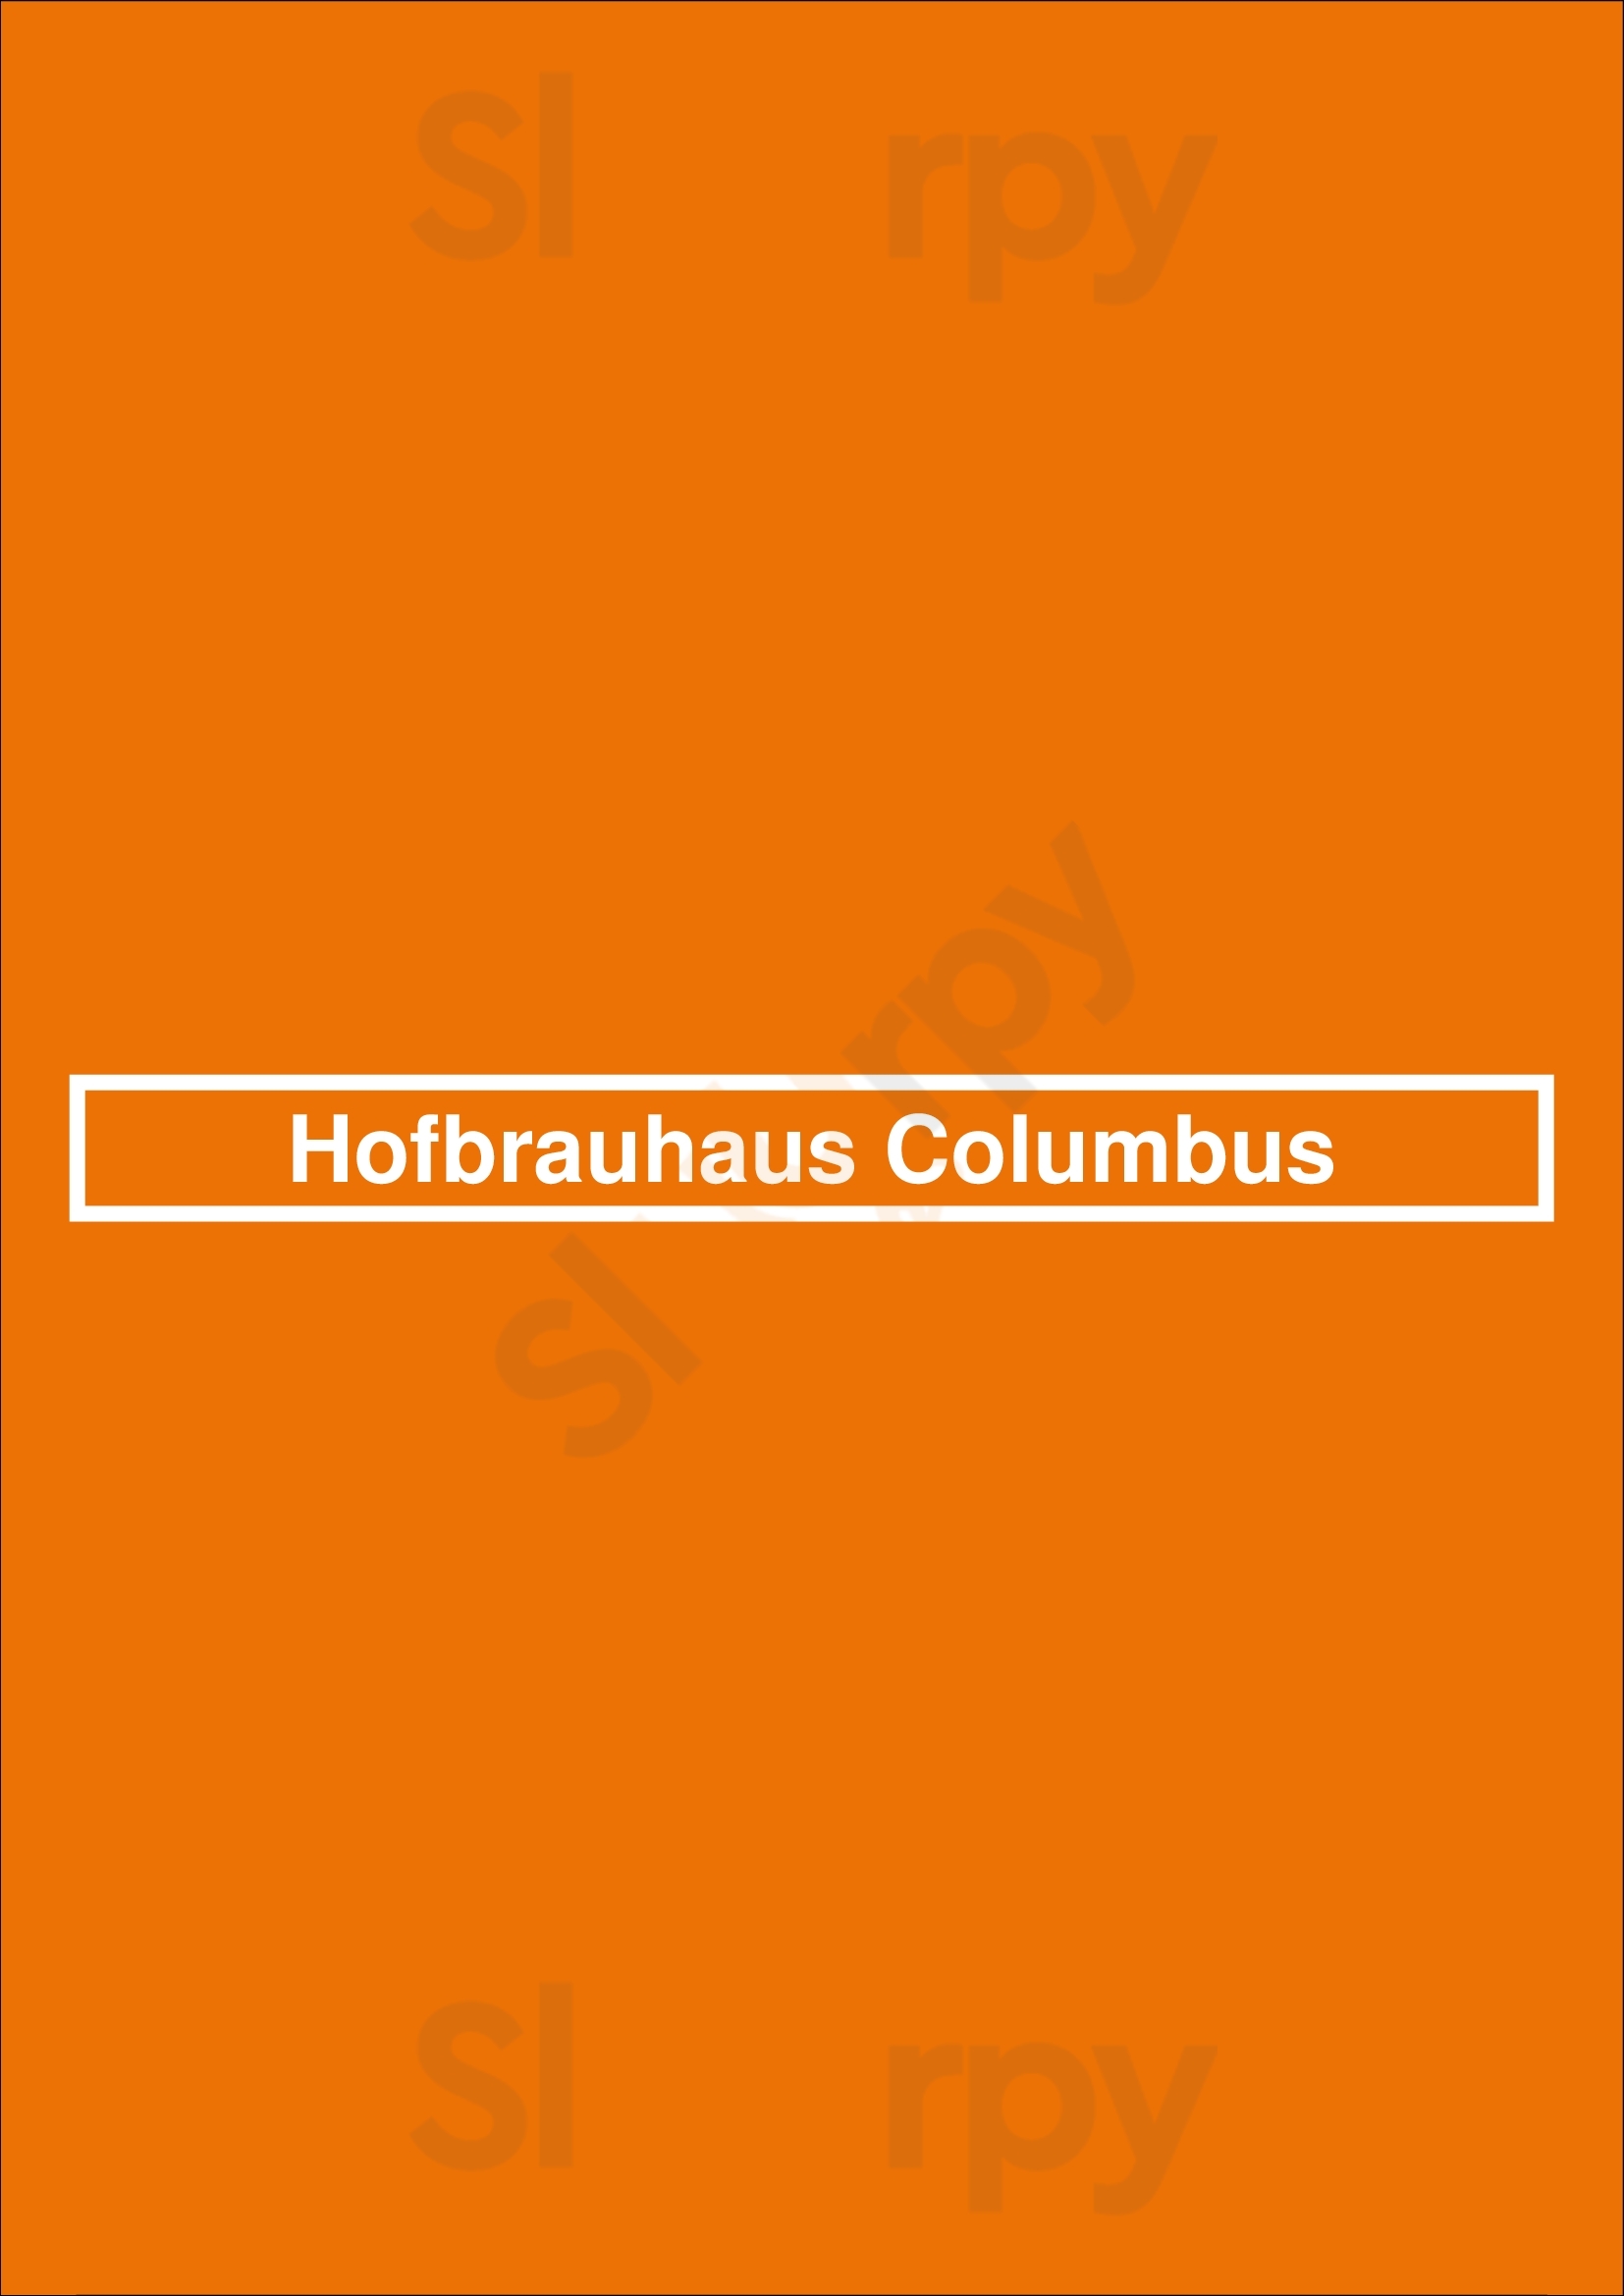 Hofbrauhaus Columbus Columbus Menu - 1